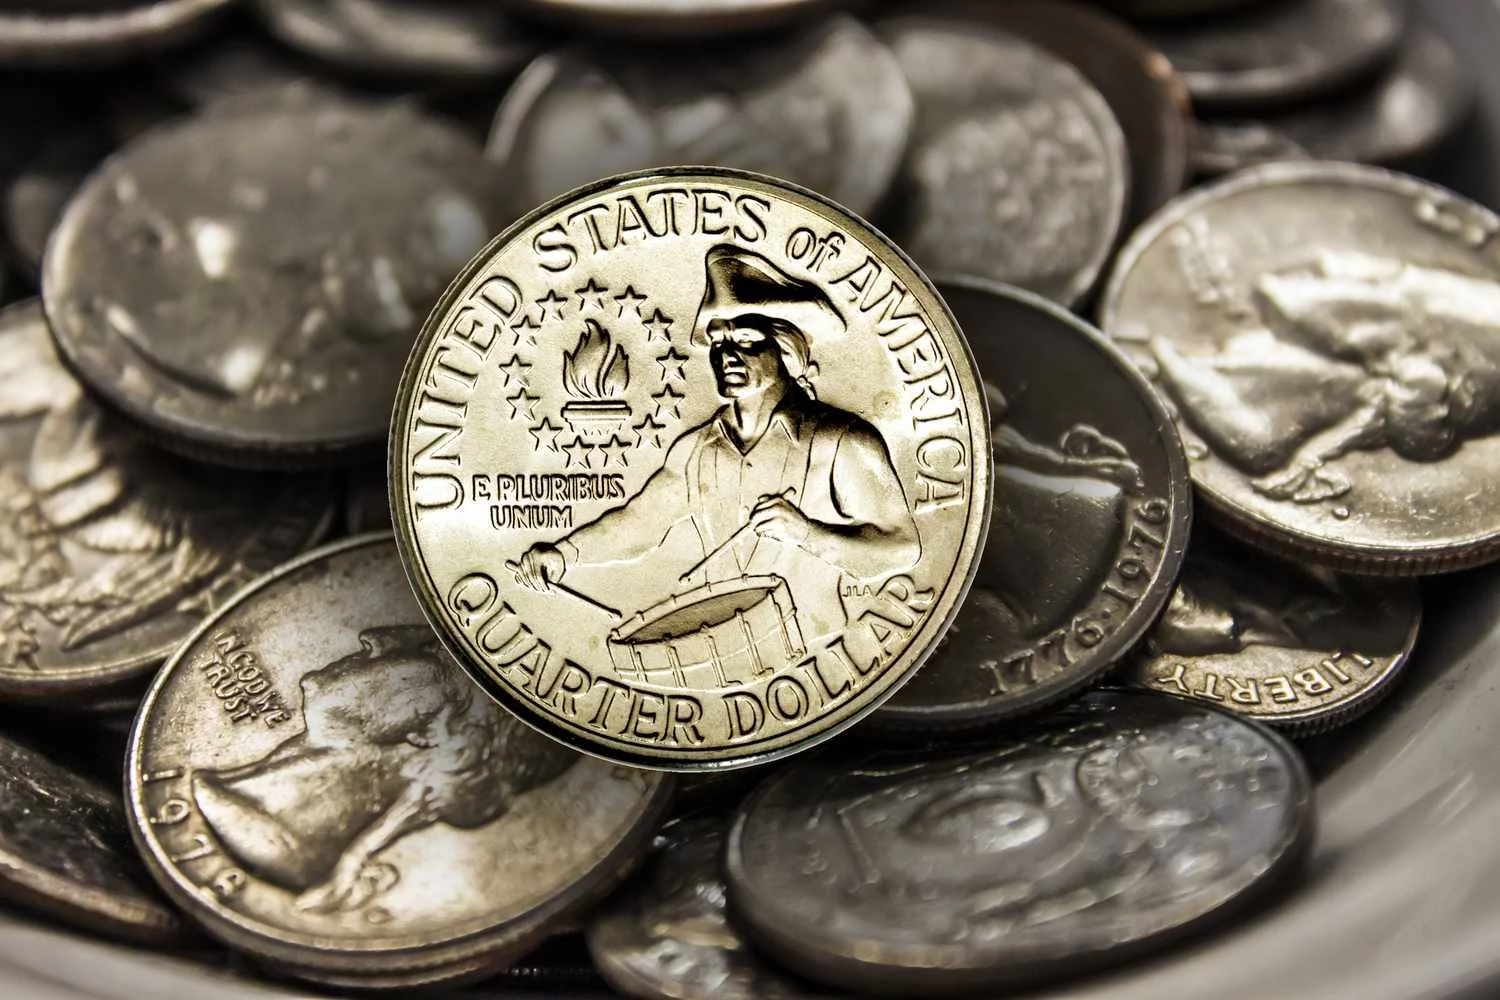 Eight Rare Dimes and Rare Bicentennial Quarter Worth $52 Million Each